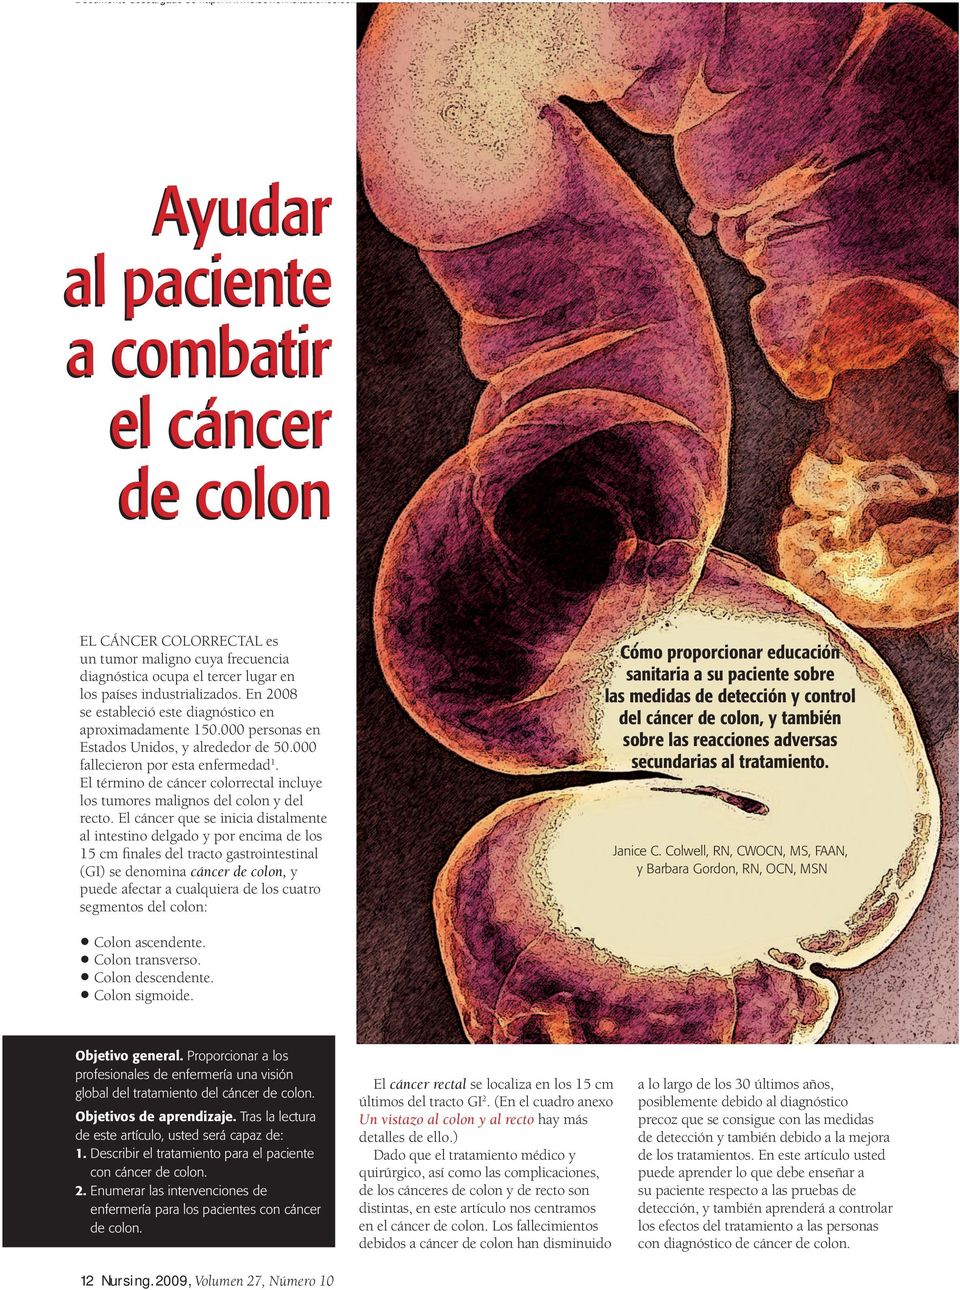 El término de cáncer colorrectal incluye los tumores malignos del colon y del recto.